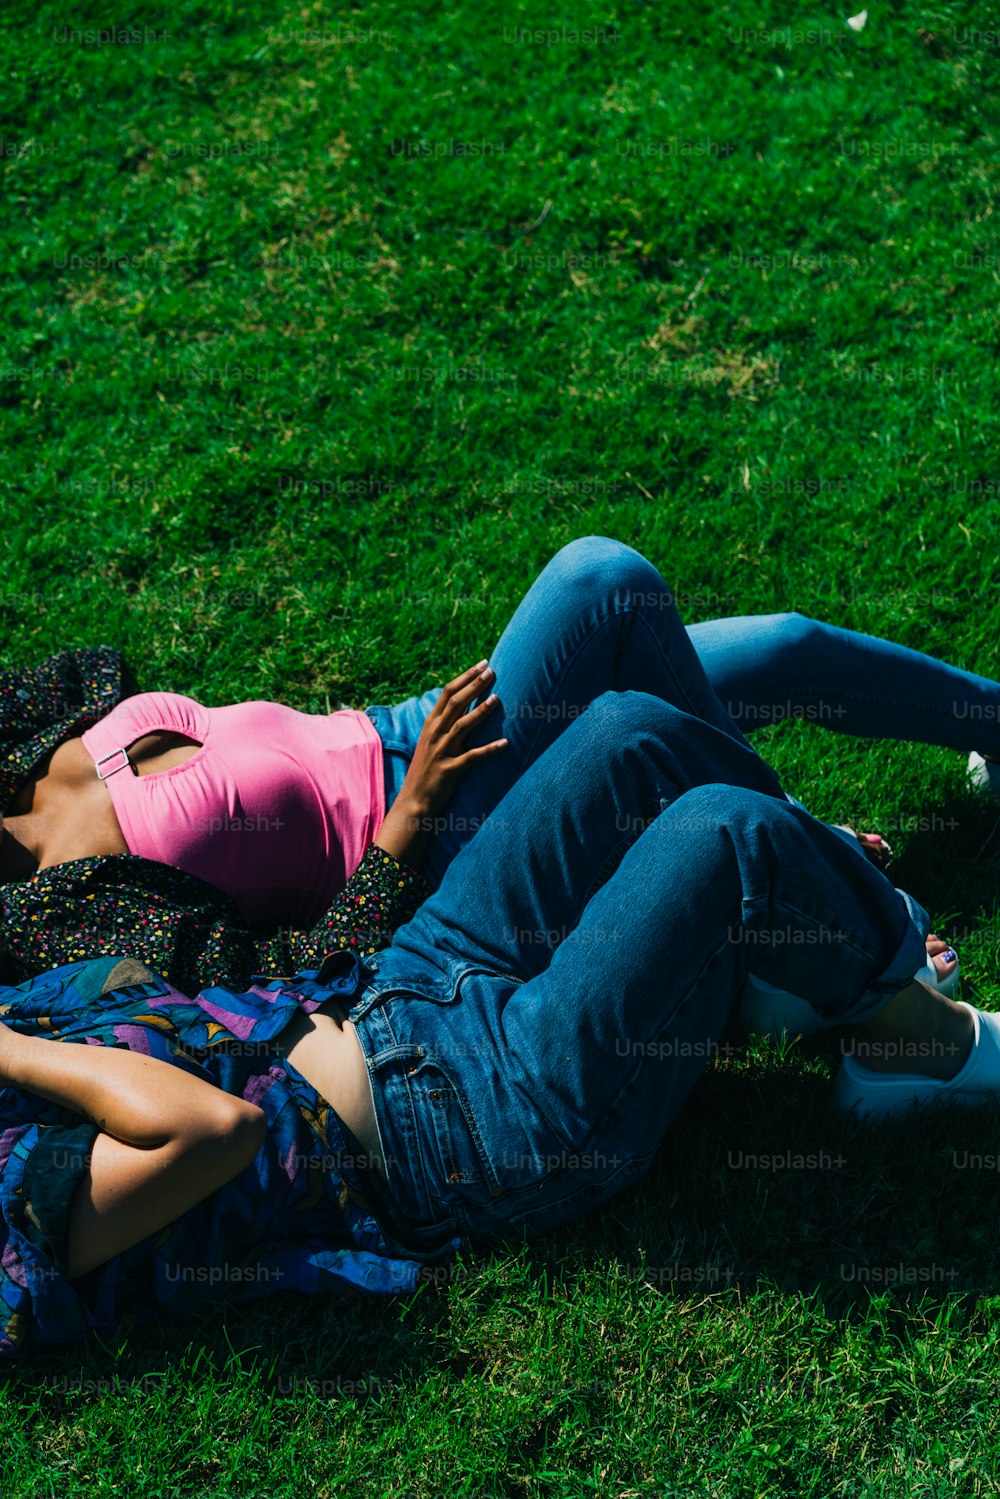 Un par de personas tumbadas en la cima de un exuberante campo verde